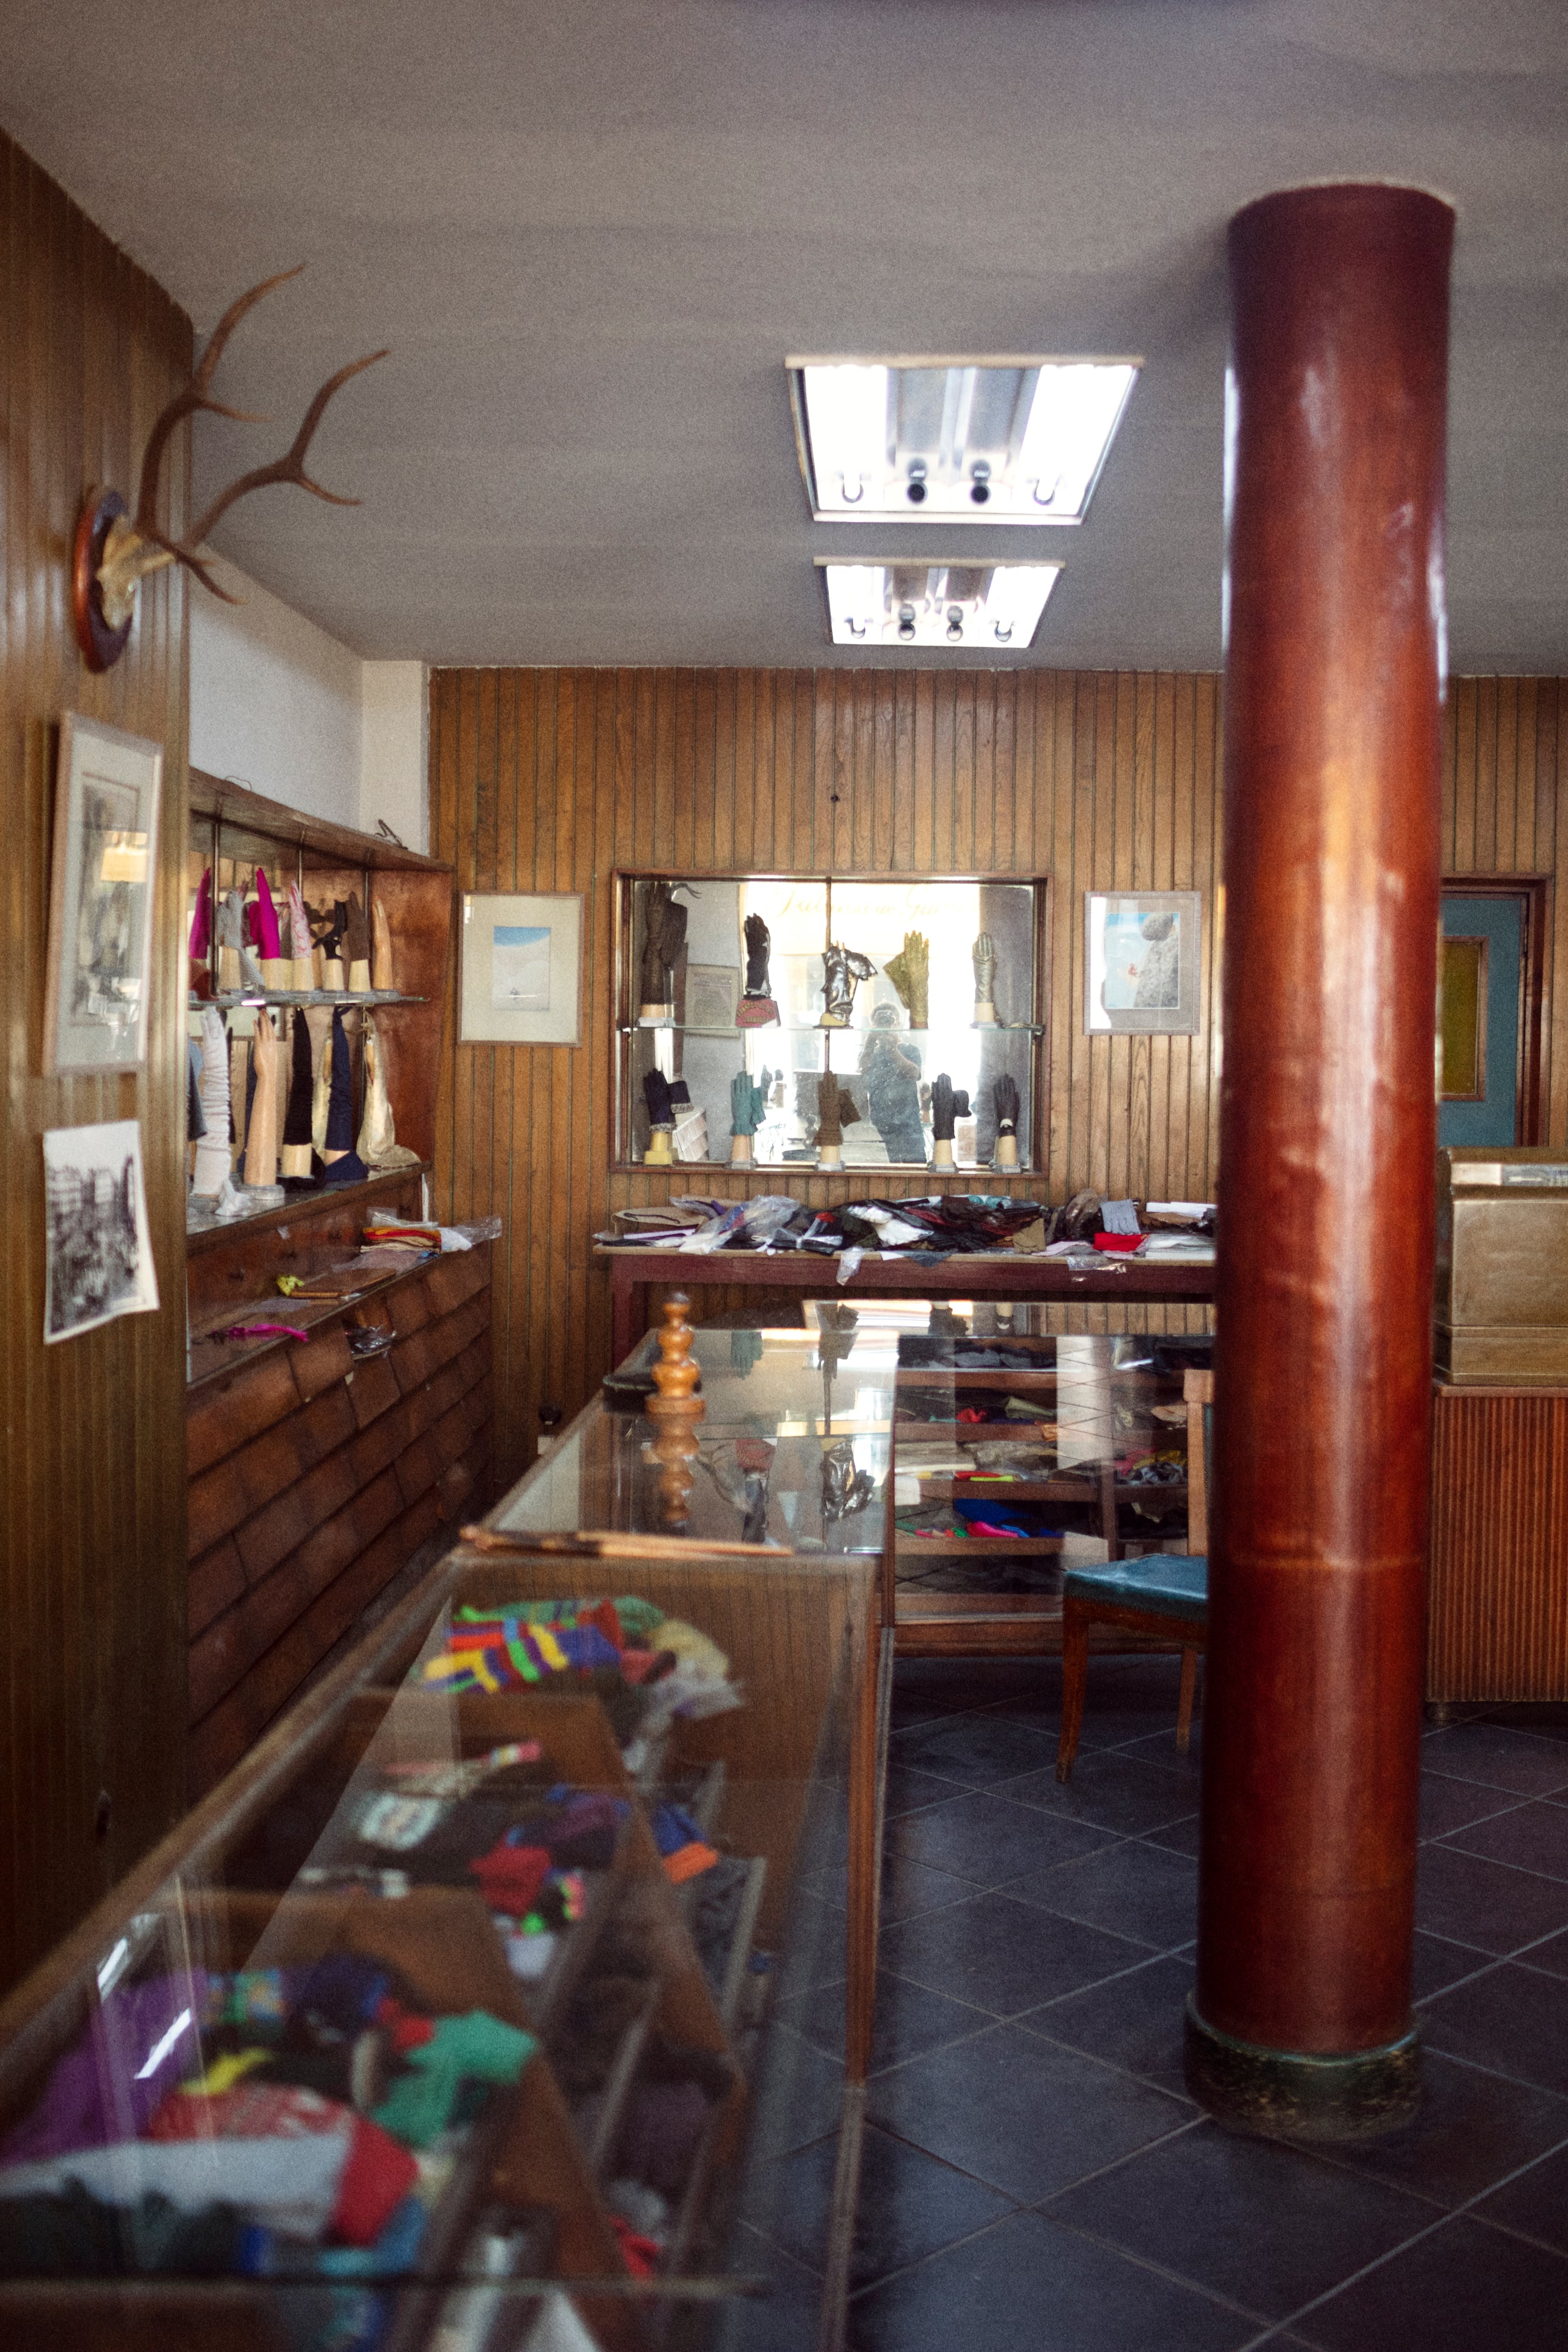 Guantes Luque. Creada en 1886, esta tienda de venta de guantes cercana a la Puerta del Sol está regentada por Álvaro Ruiz: “Mi negocio es único, está muy especializado. Por eso hemos sobrevivido”.